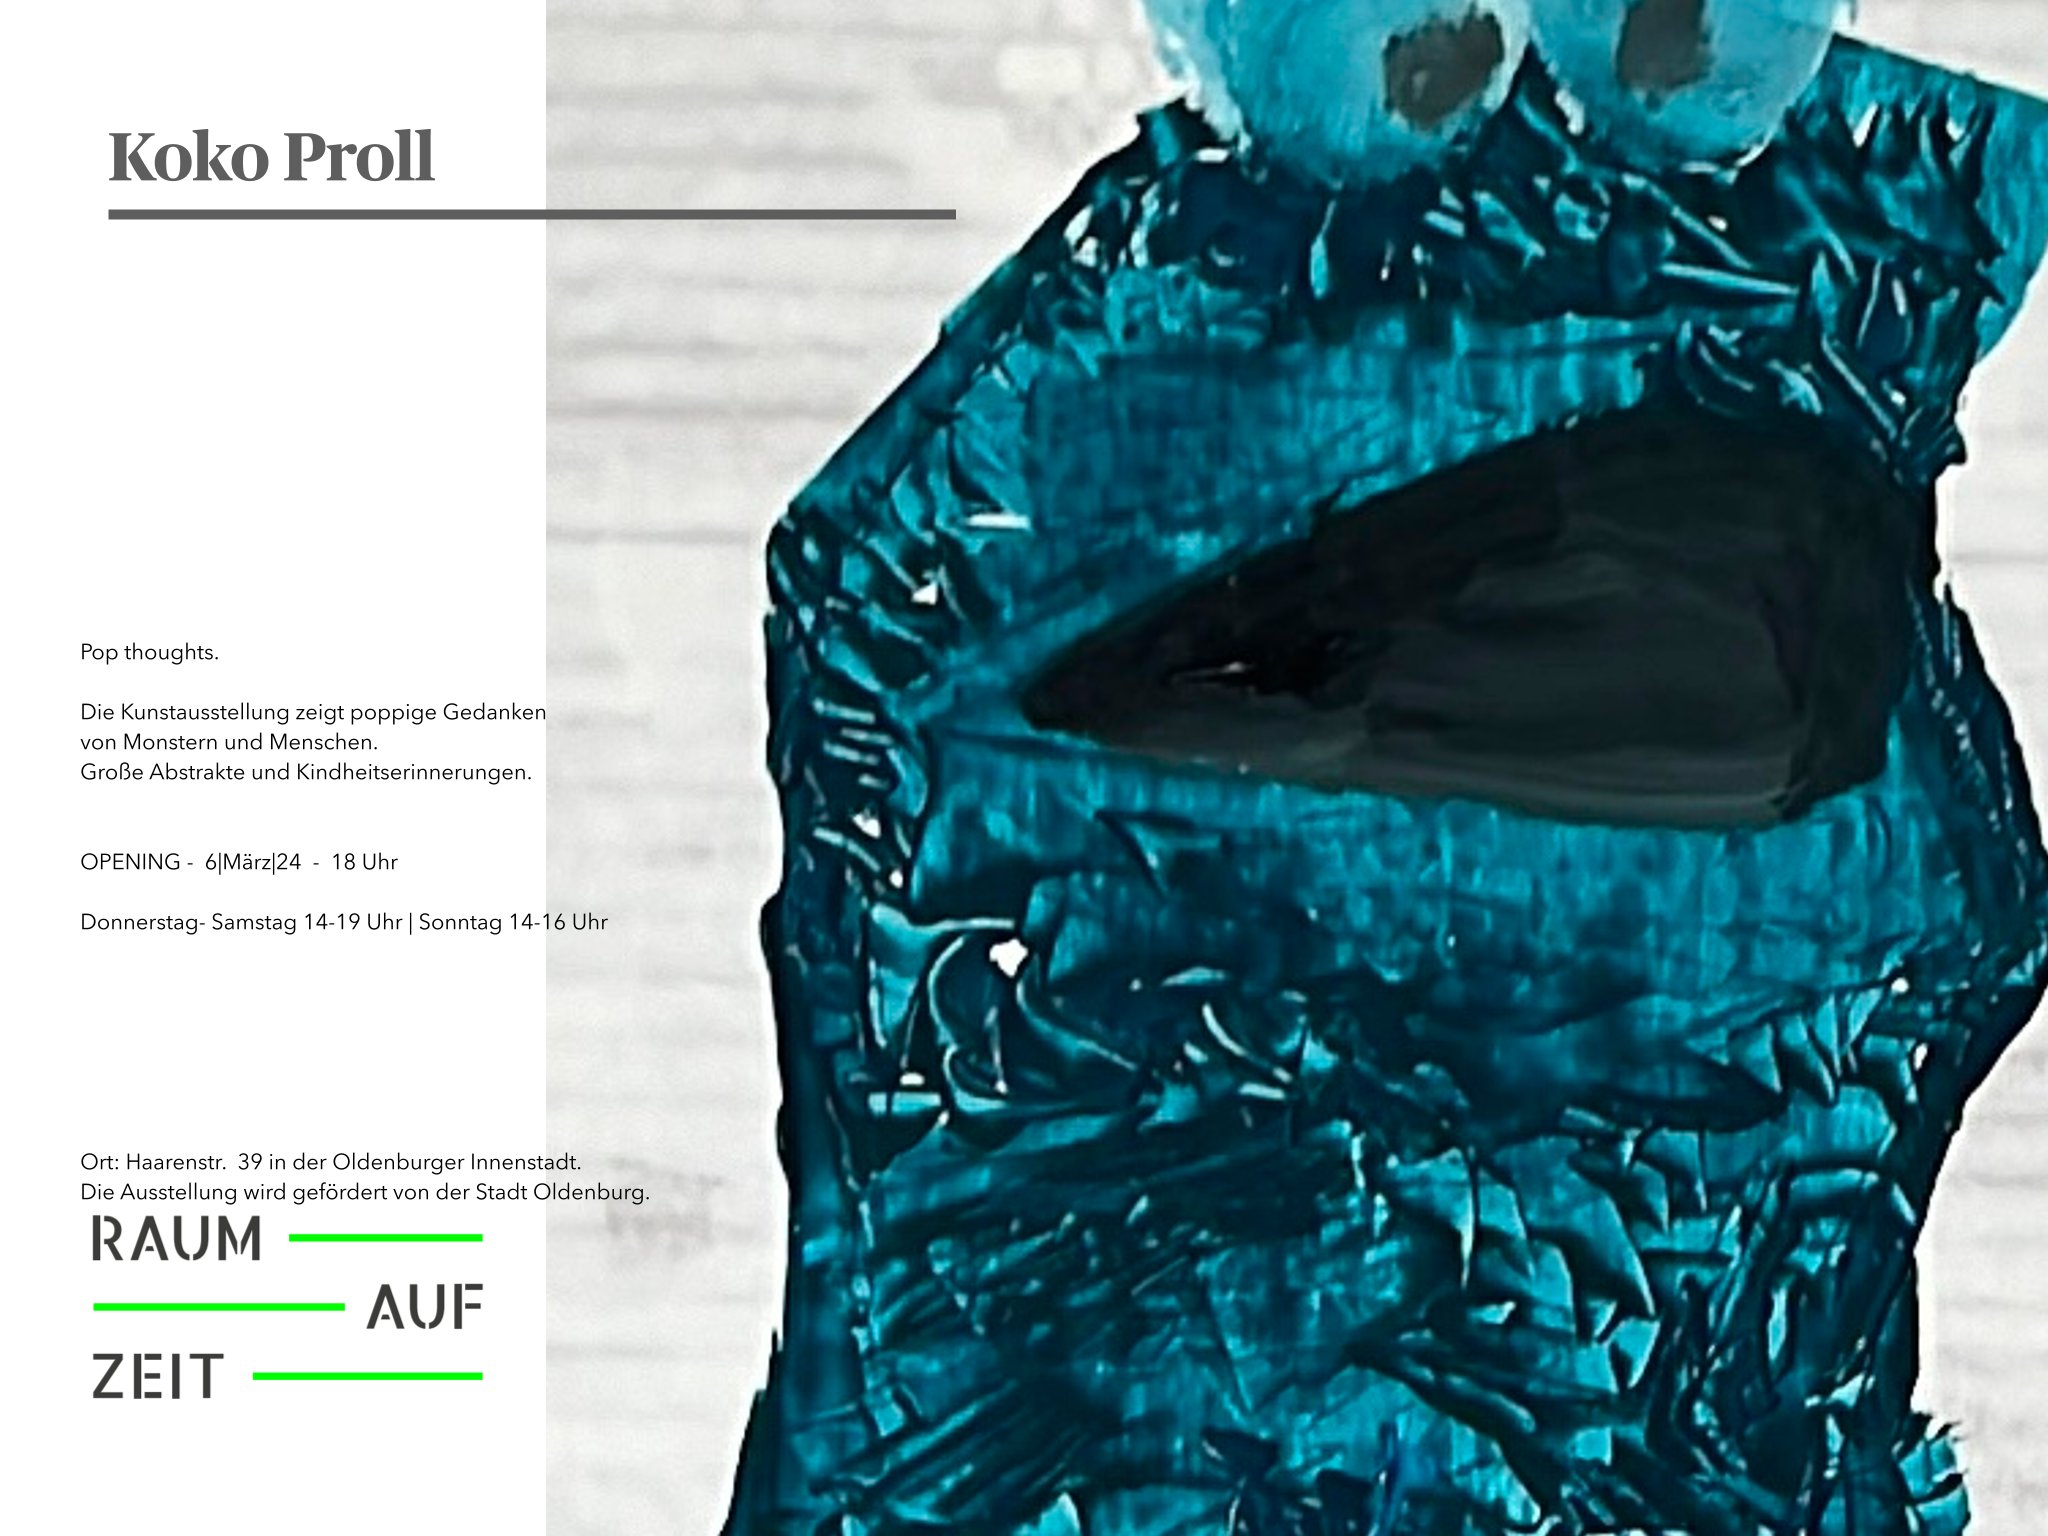 Ausstellungsflyer Seite 2 Koko Proll "pop thoughts von Monstern und Menschen"